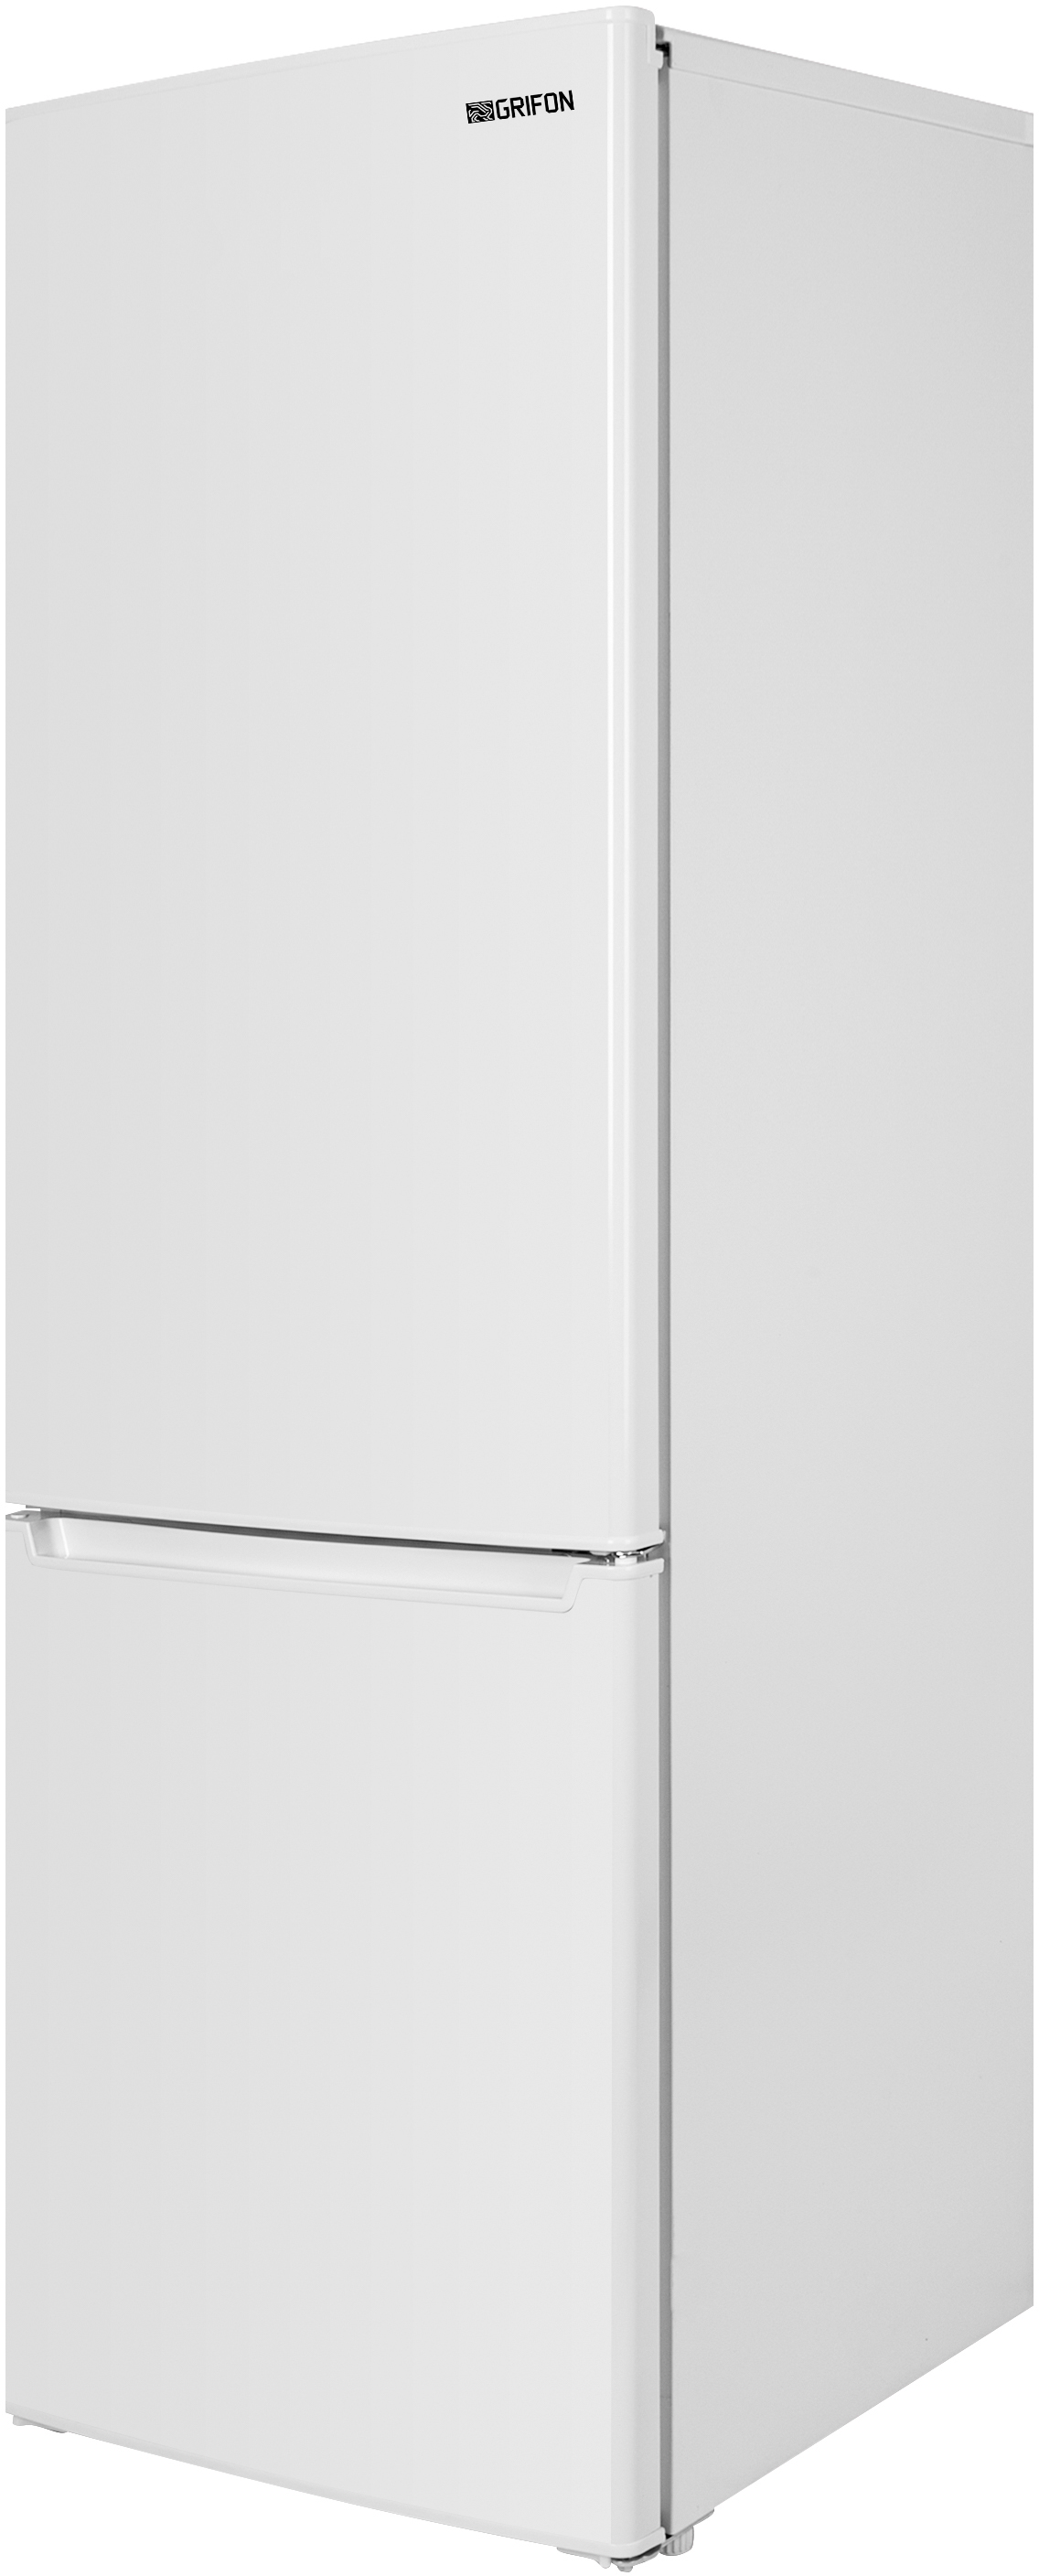 в продажу Холодильник Grifon NFN-180W - фото 3